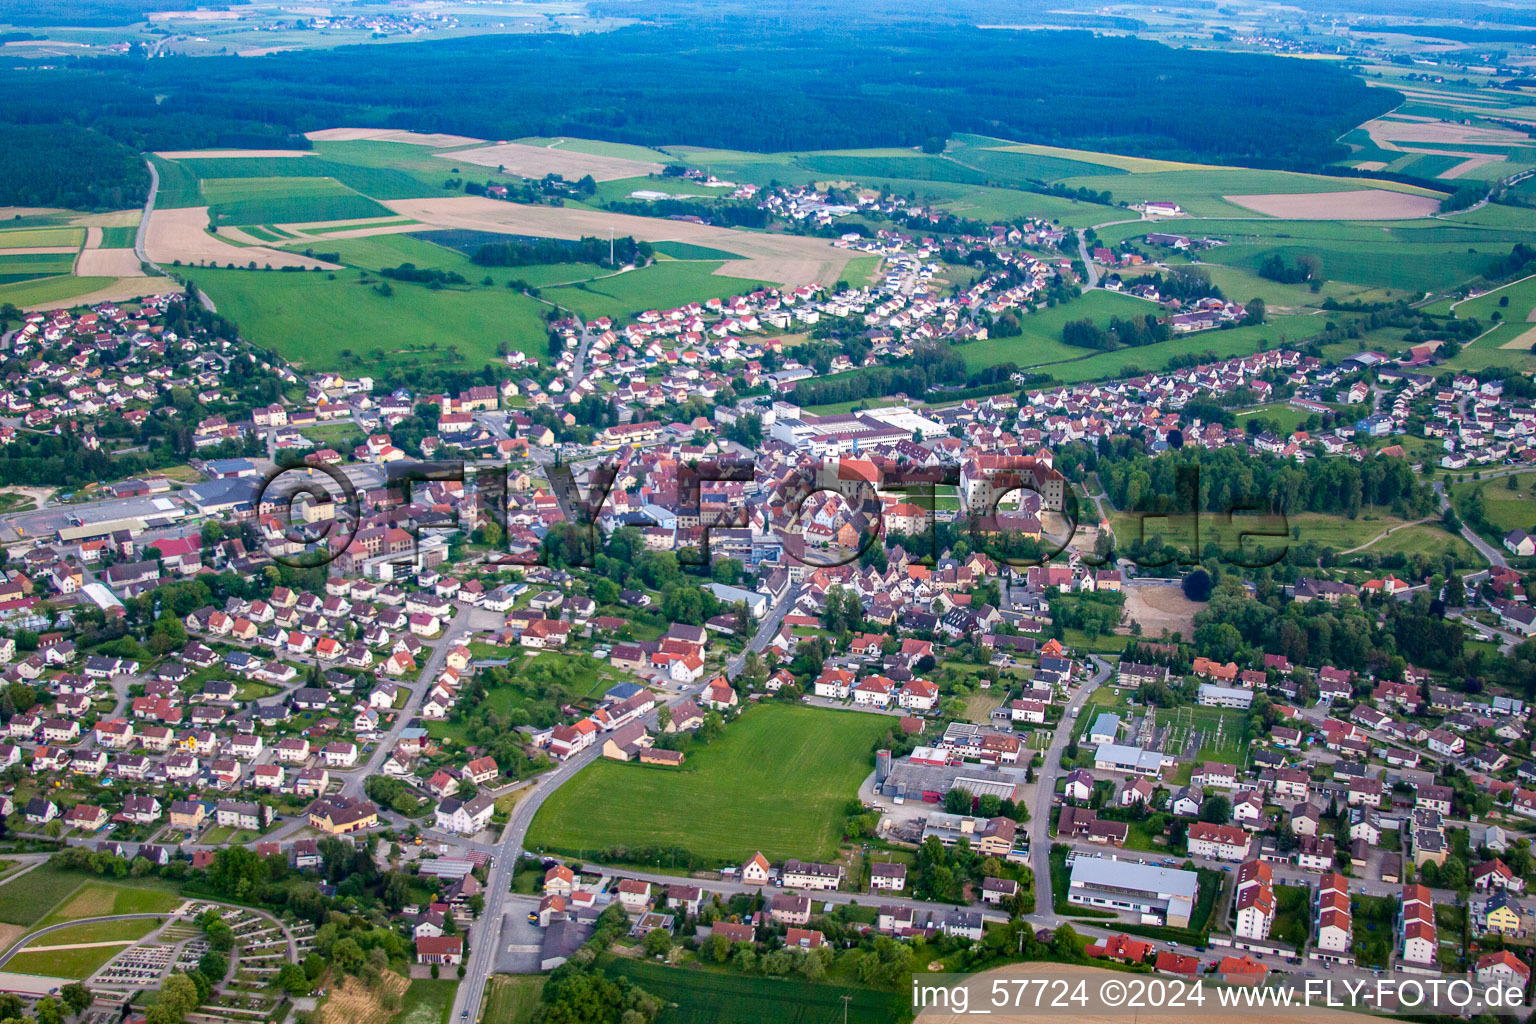 Meßkirch dans le département Bade-Wurtemberg, Allemagne du point de vue du drone